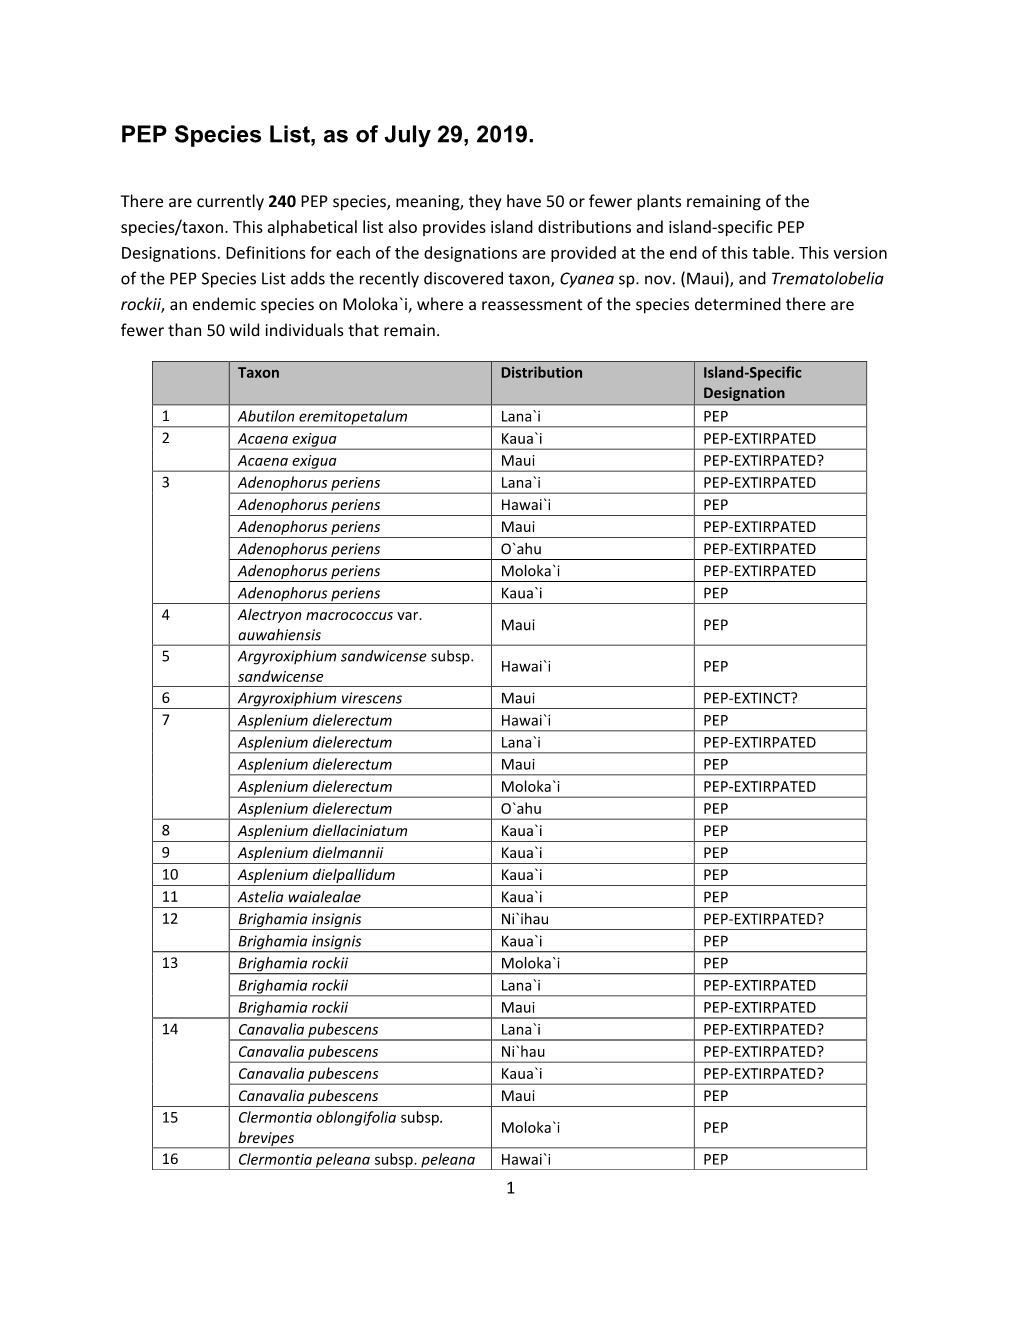 PEP Species List, As of May 20, 2013